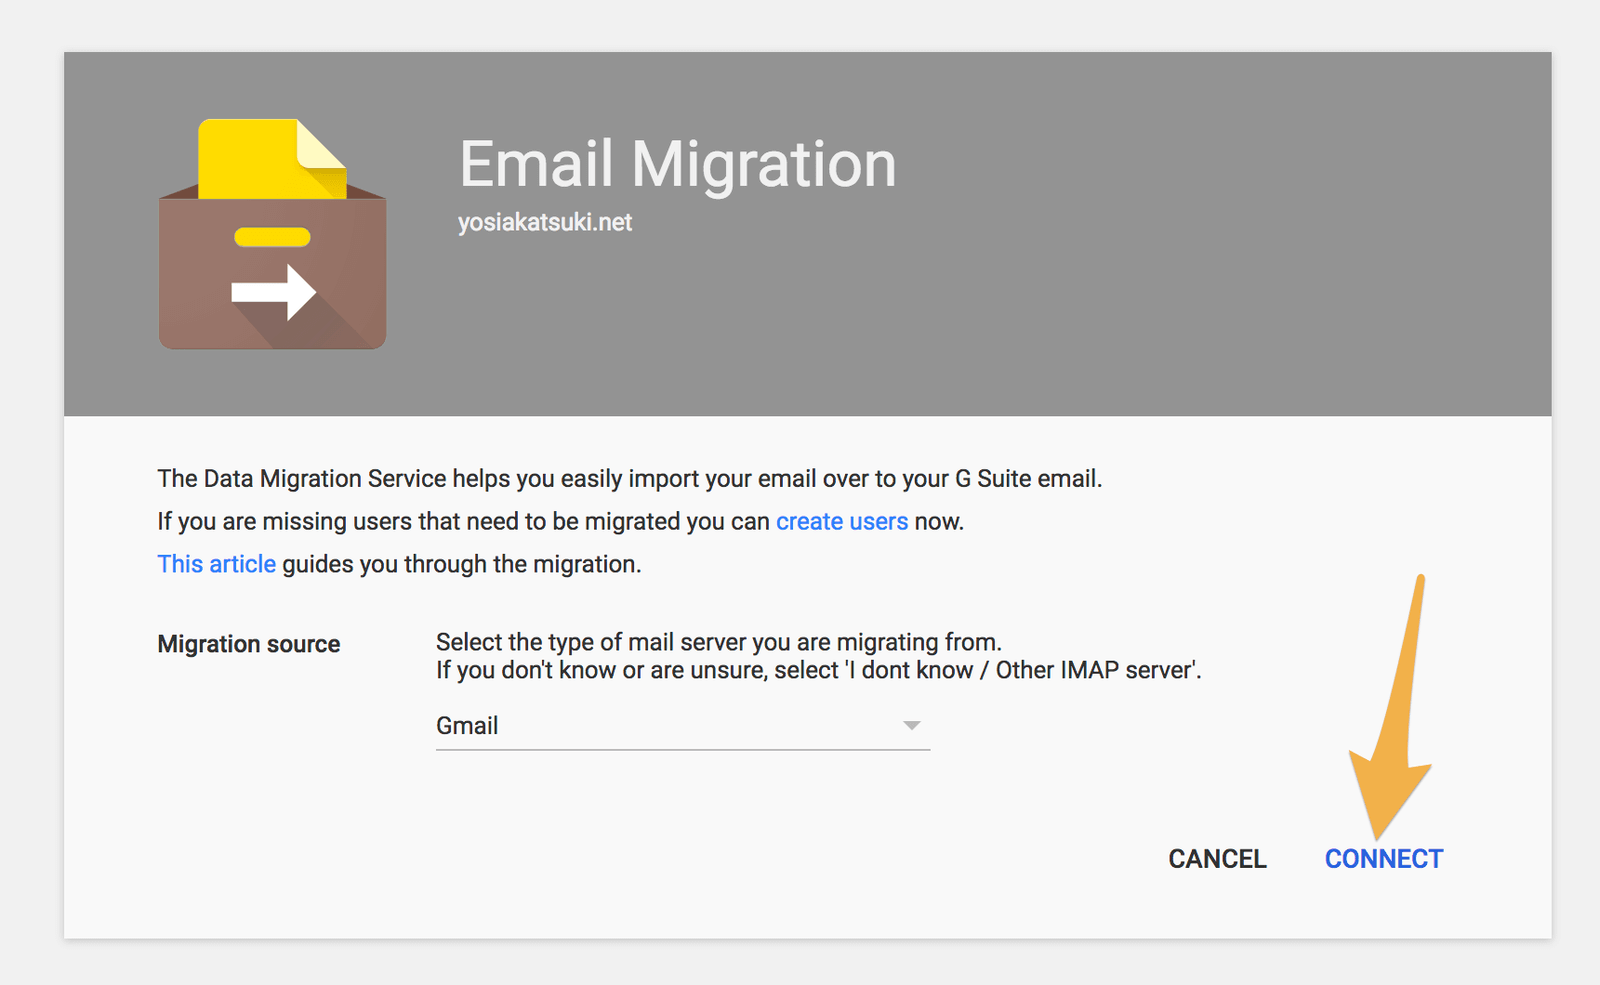 Gmailを選んだらCONNECTを押す